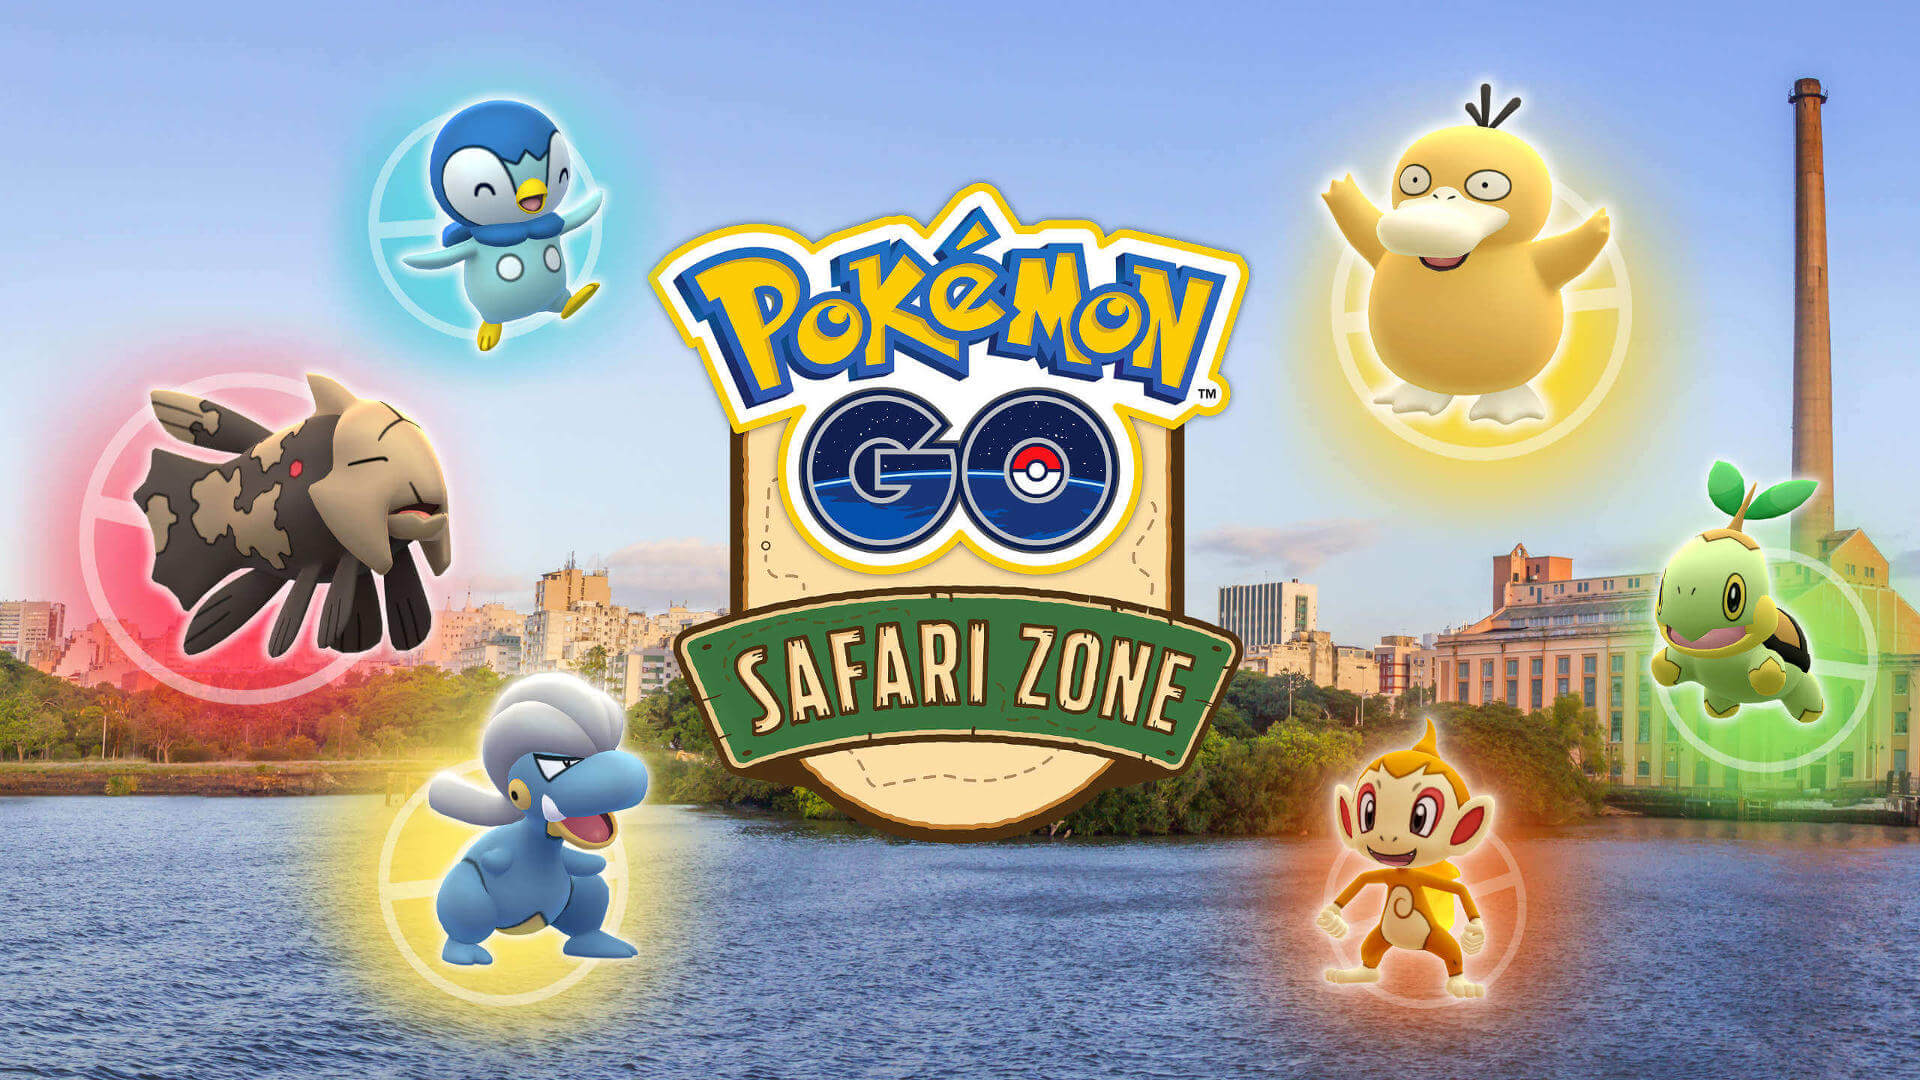 Altas mudanças nos - PokéPoa - Pokémon Go em Porto Alegre